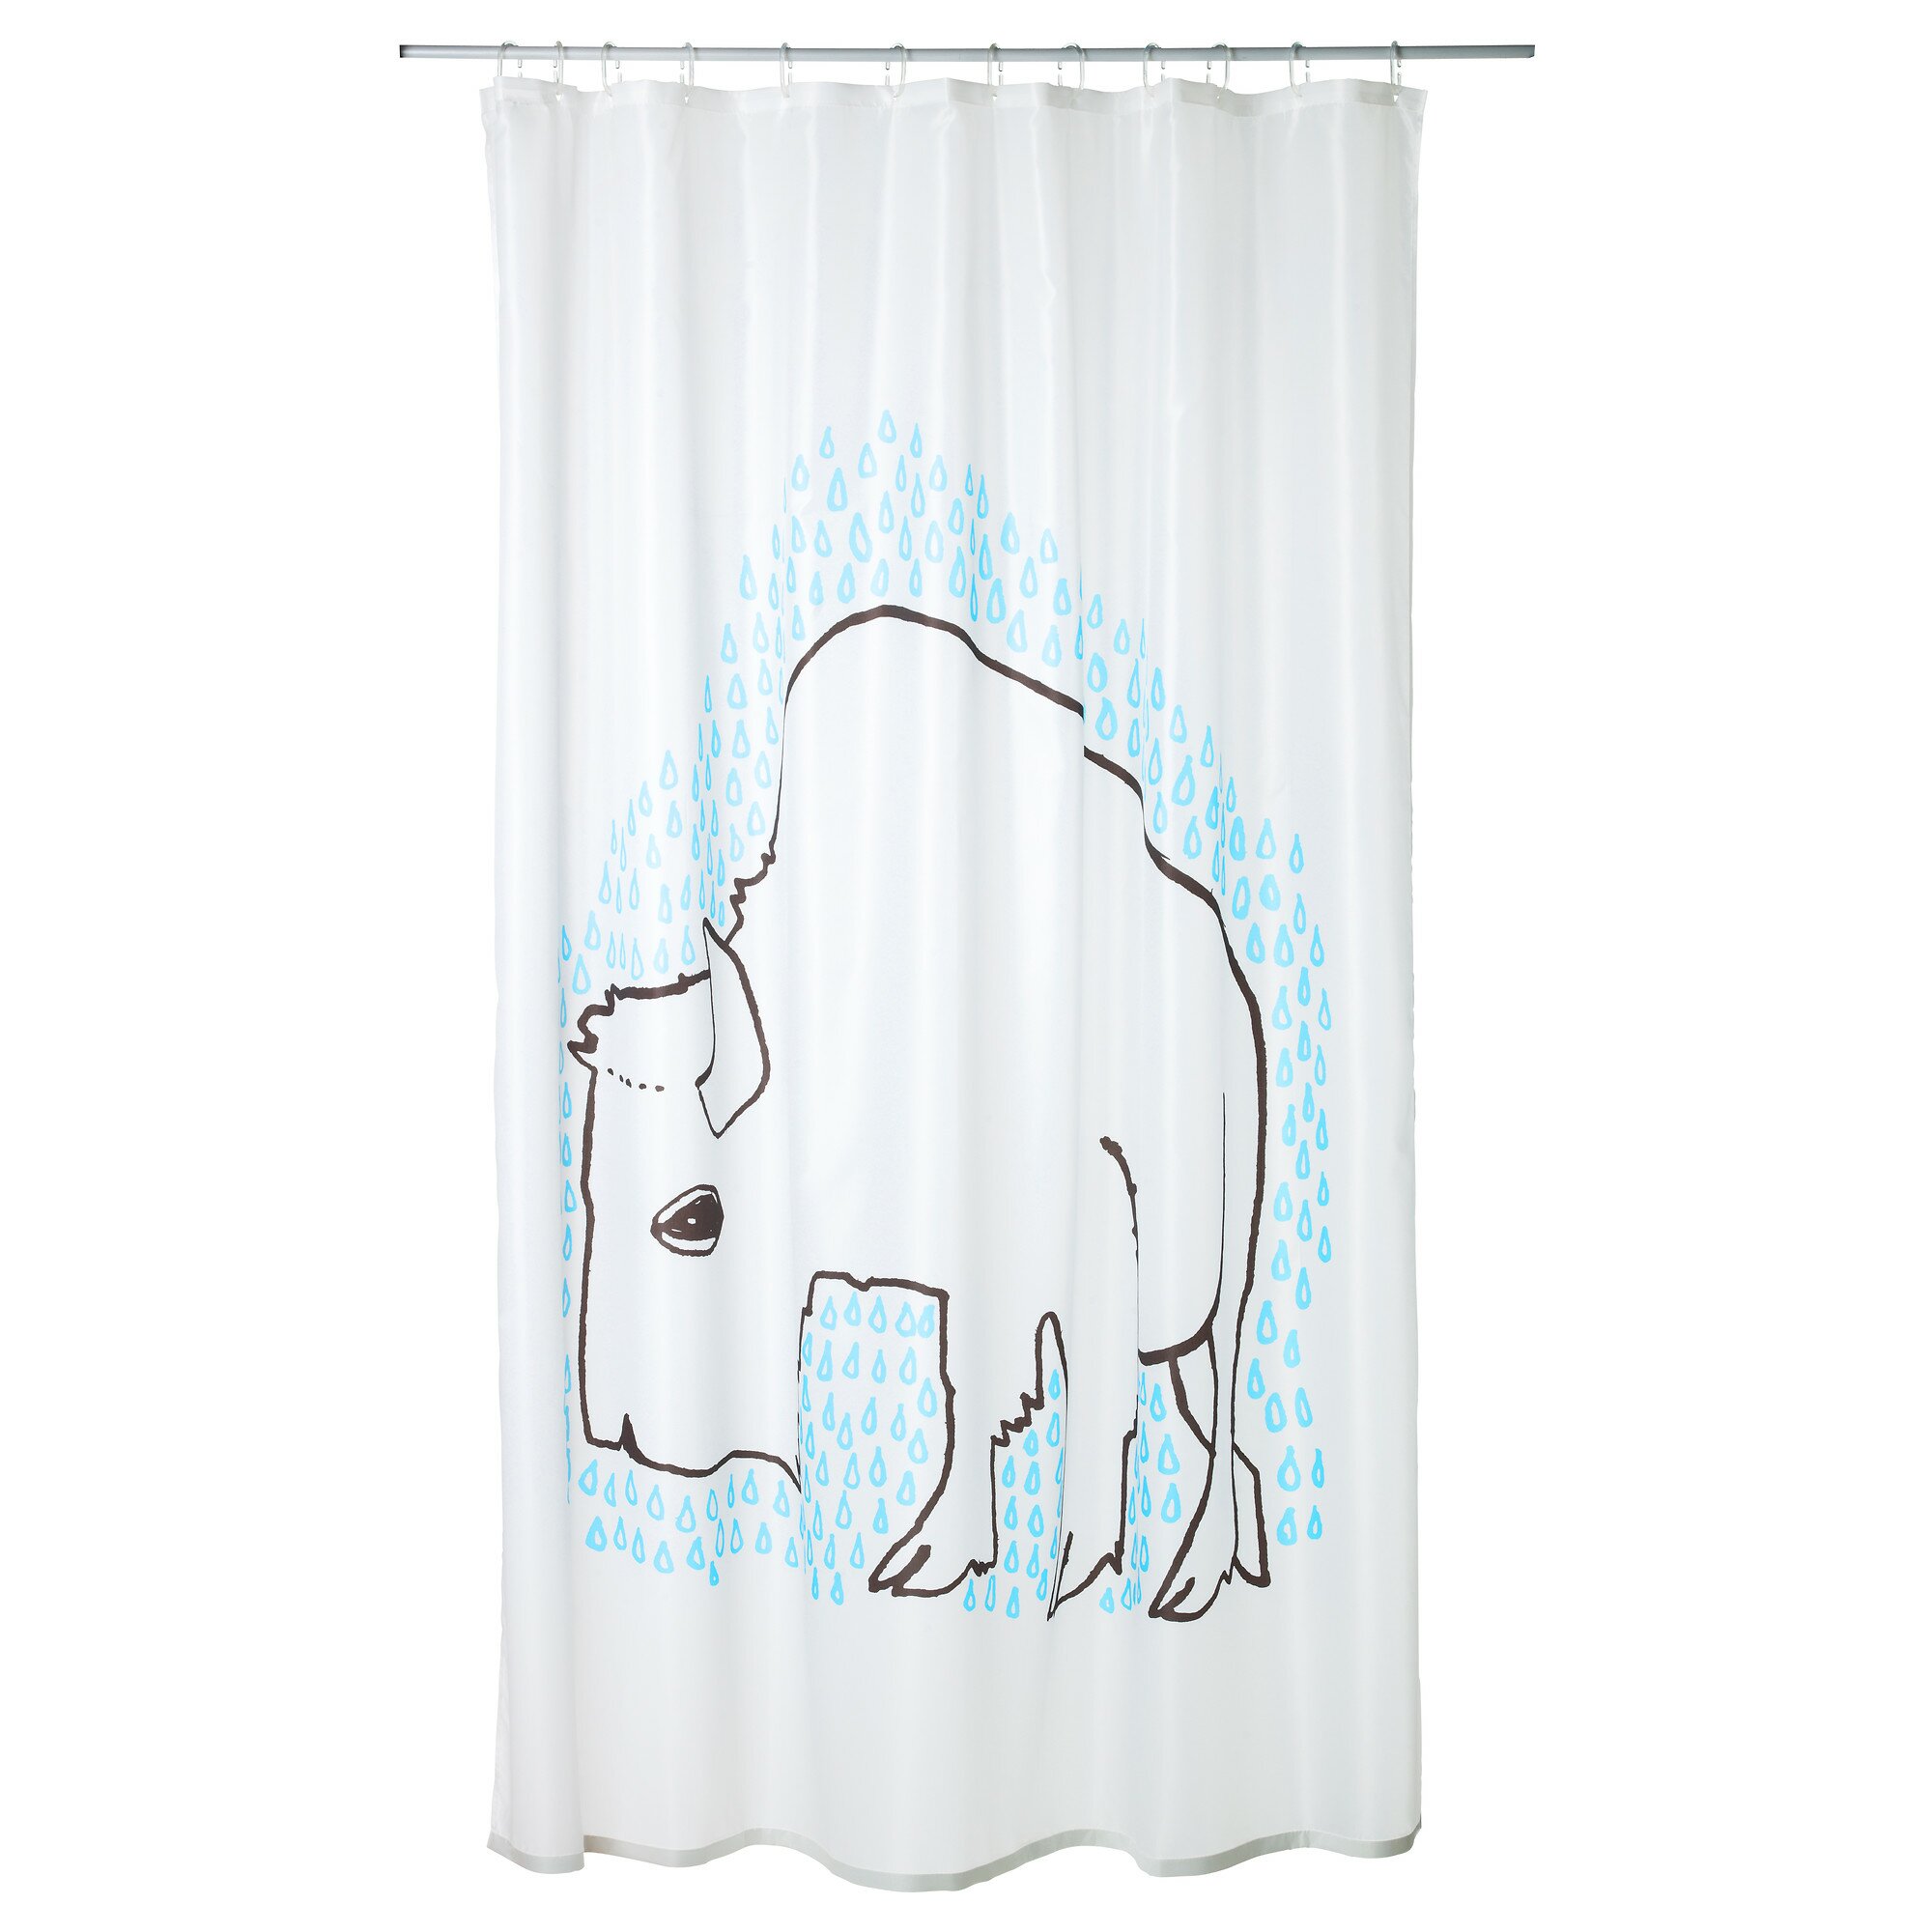 Shower Curtain Rail | Ikea Shower Curtain Hooks | Ikea Shower Curtain